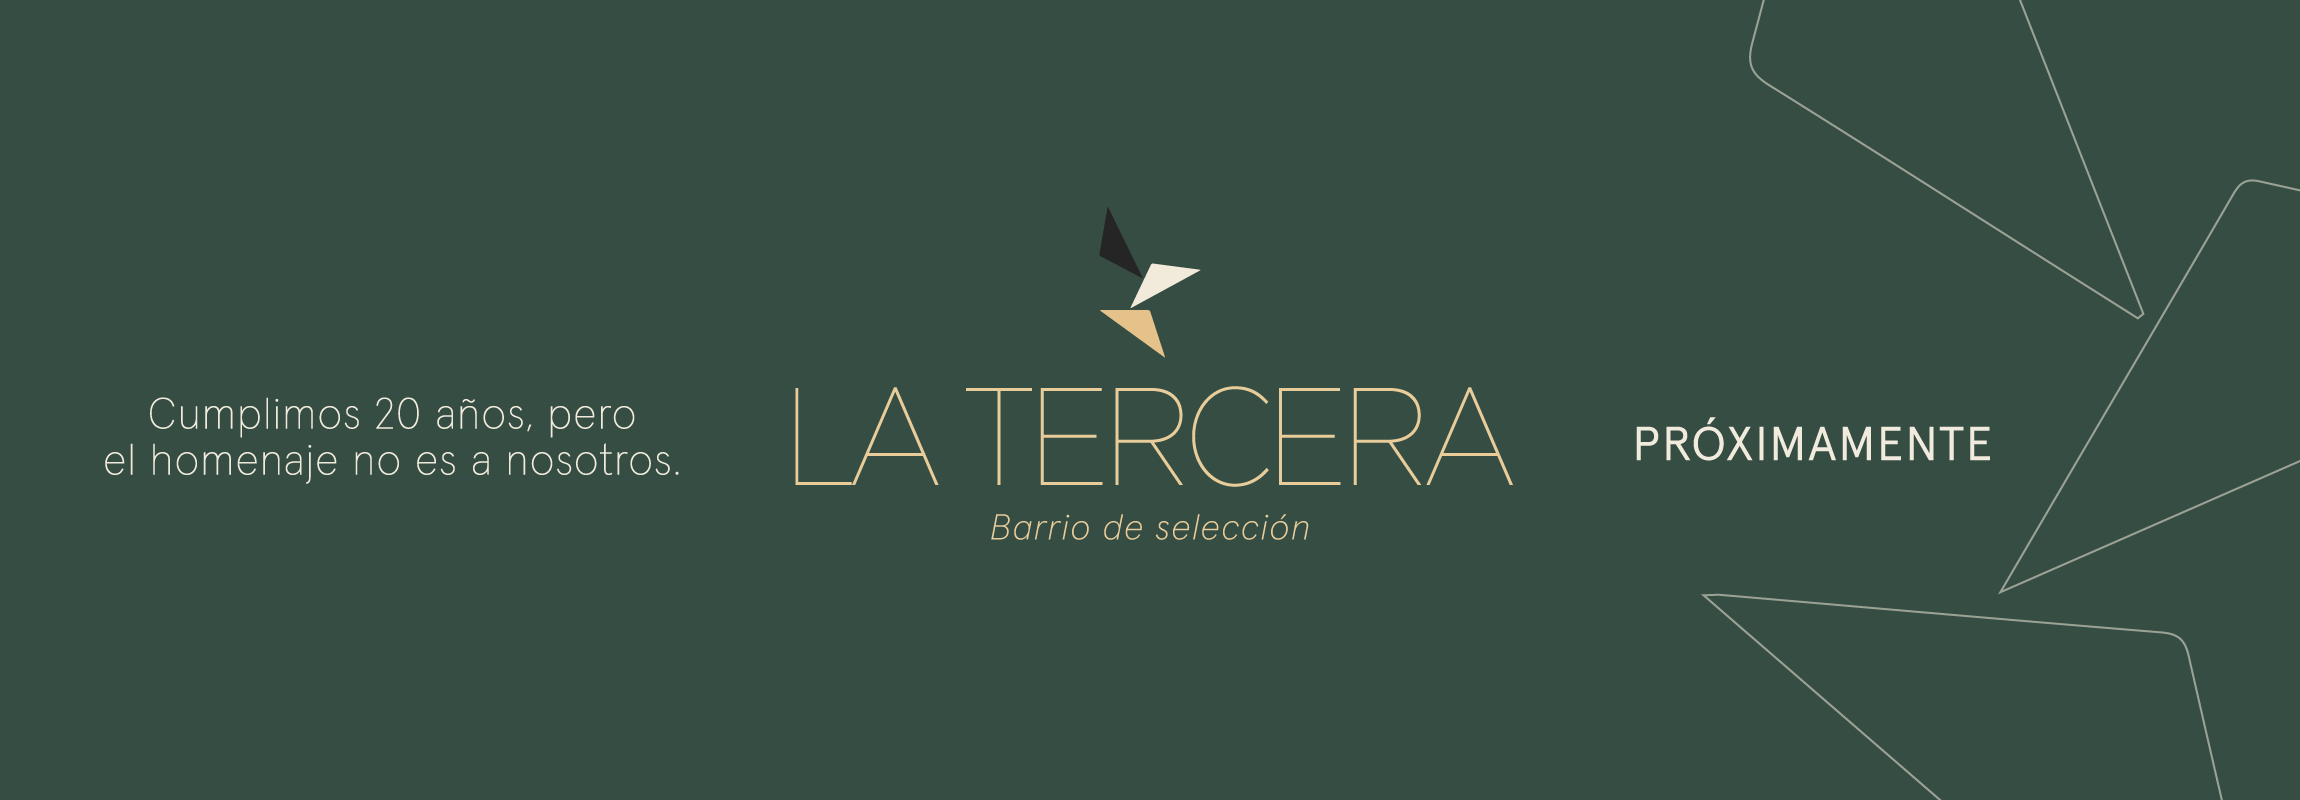 La-Tercera_banner-web-Inco_2300x800-03 (1)